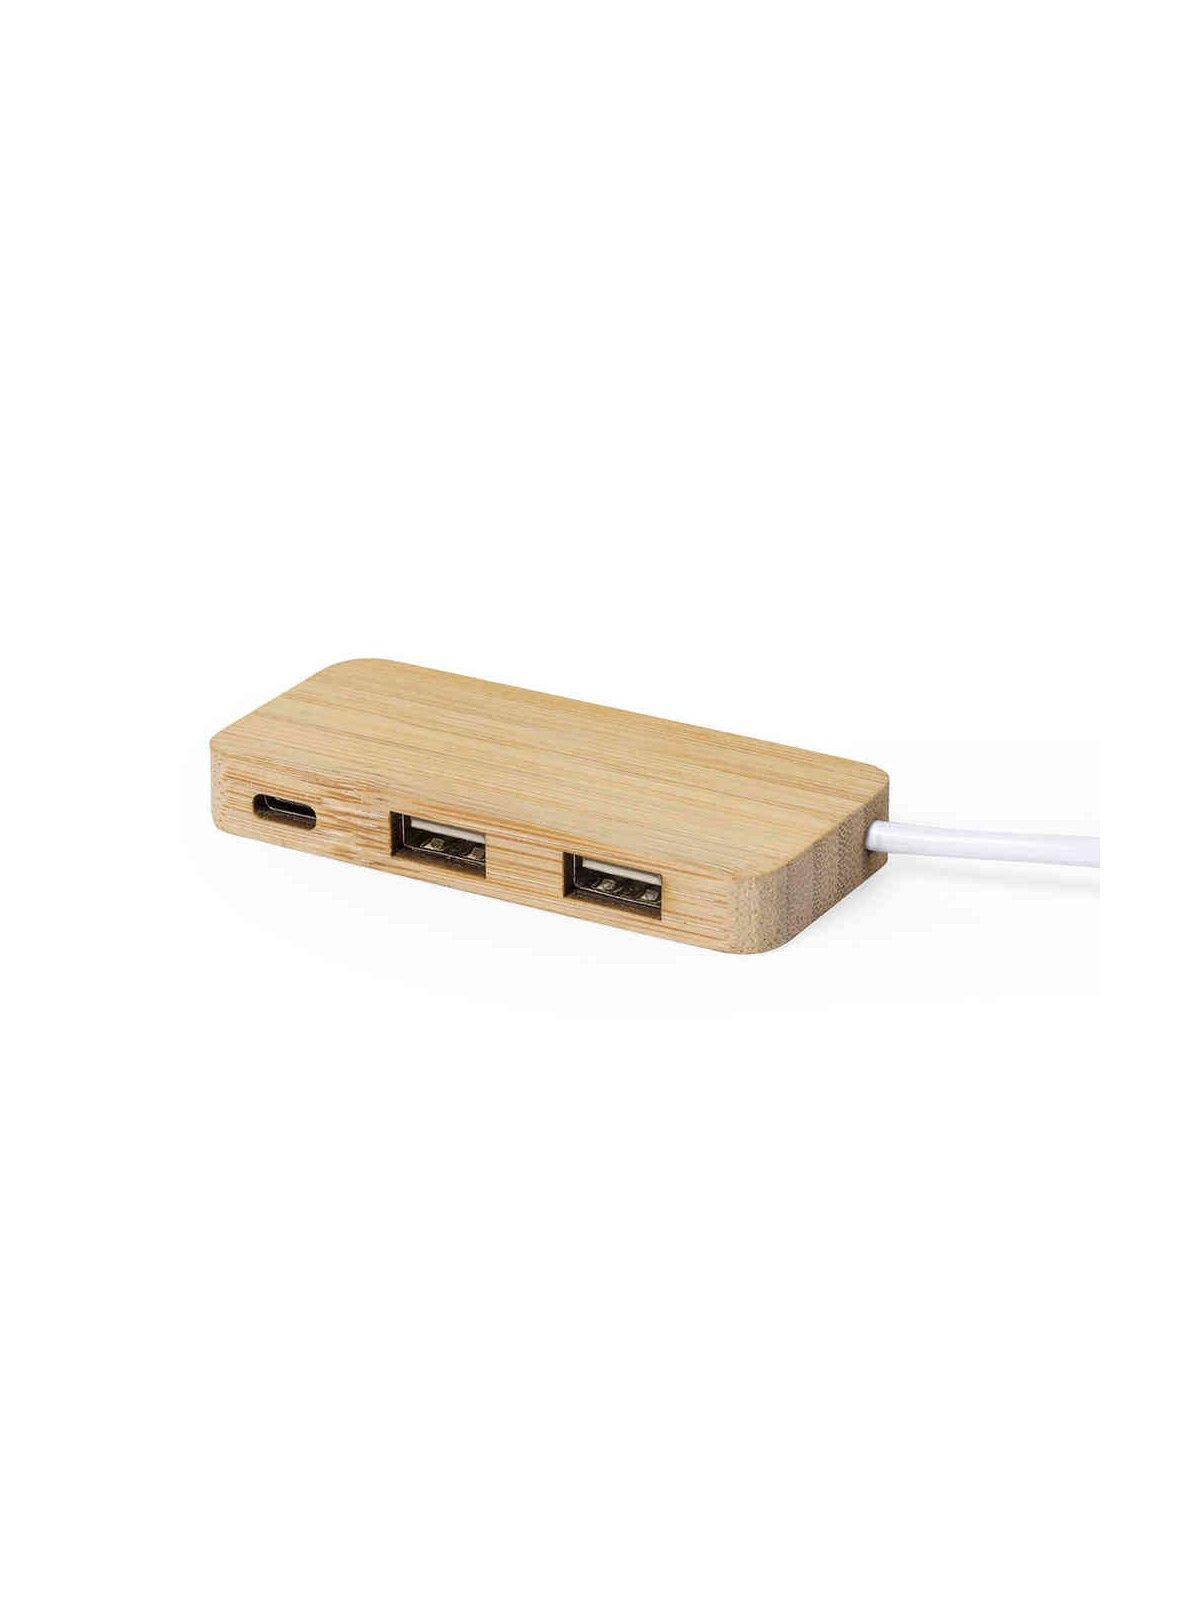 70-354 Port USB publicitaire en bambou personnalisé